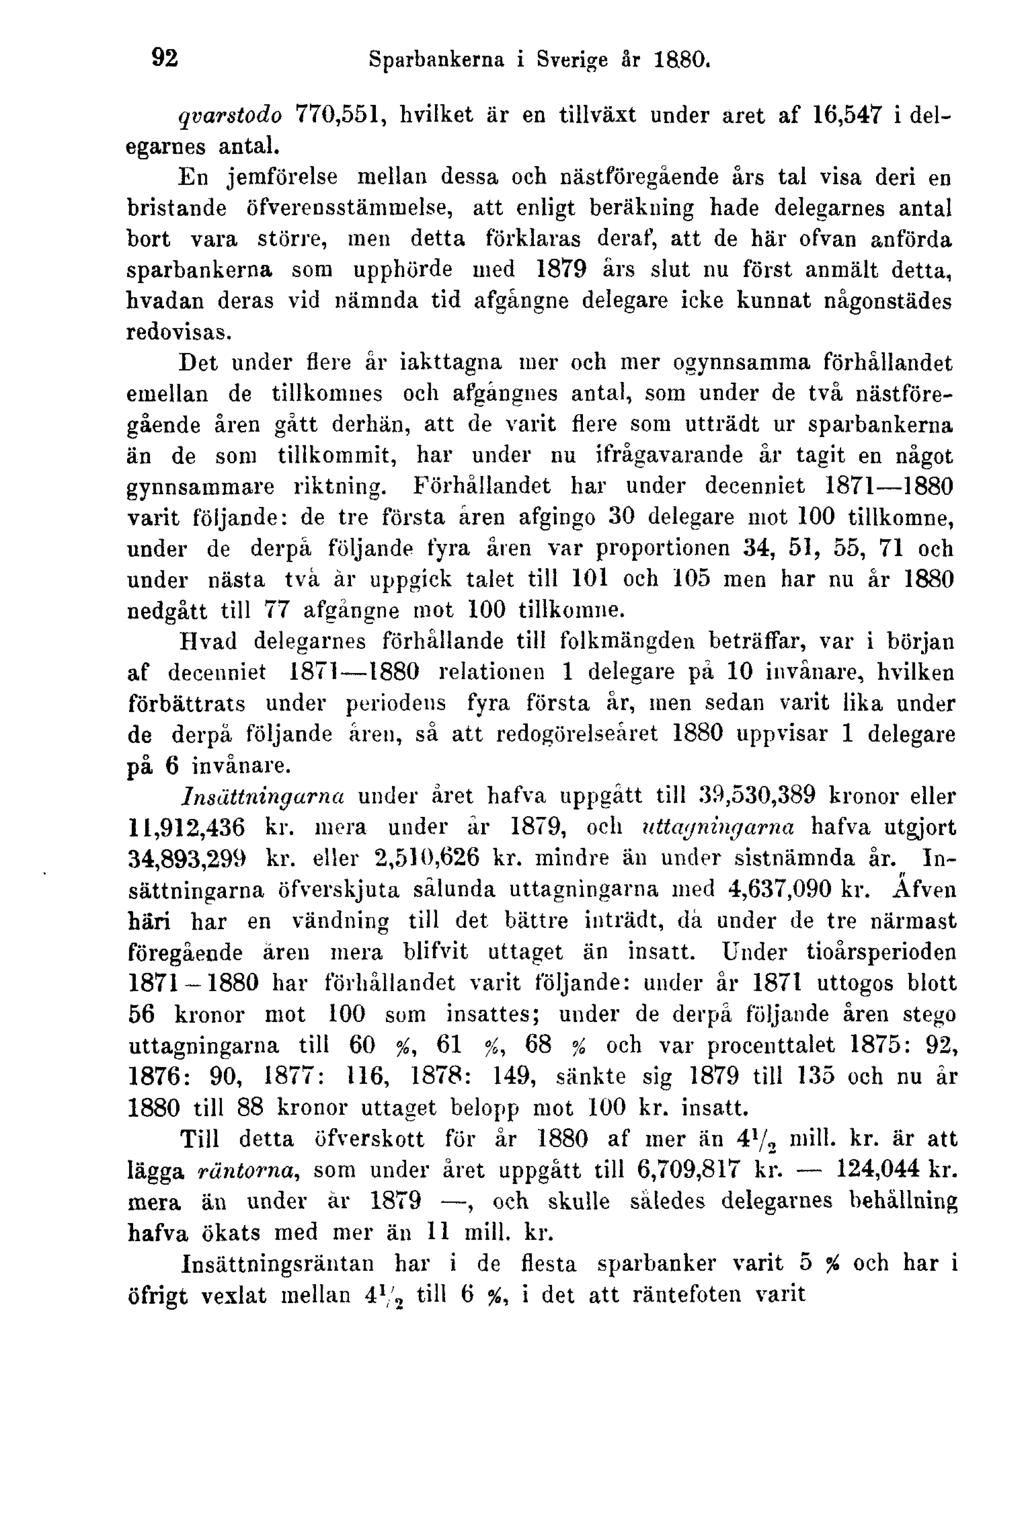 92 Sparbankerna i Sverige år 1880. qvarstodo 770,551, hvilket är en tillväxt under aret af 16,547 i delegarnes antal.